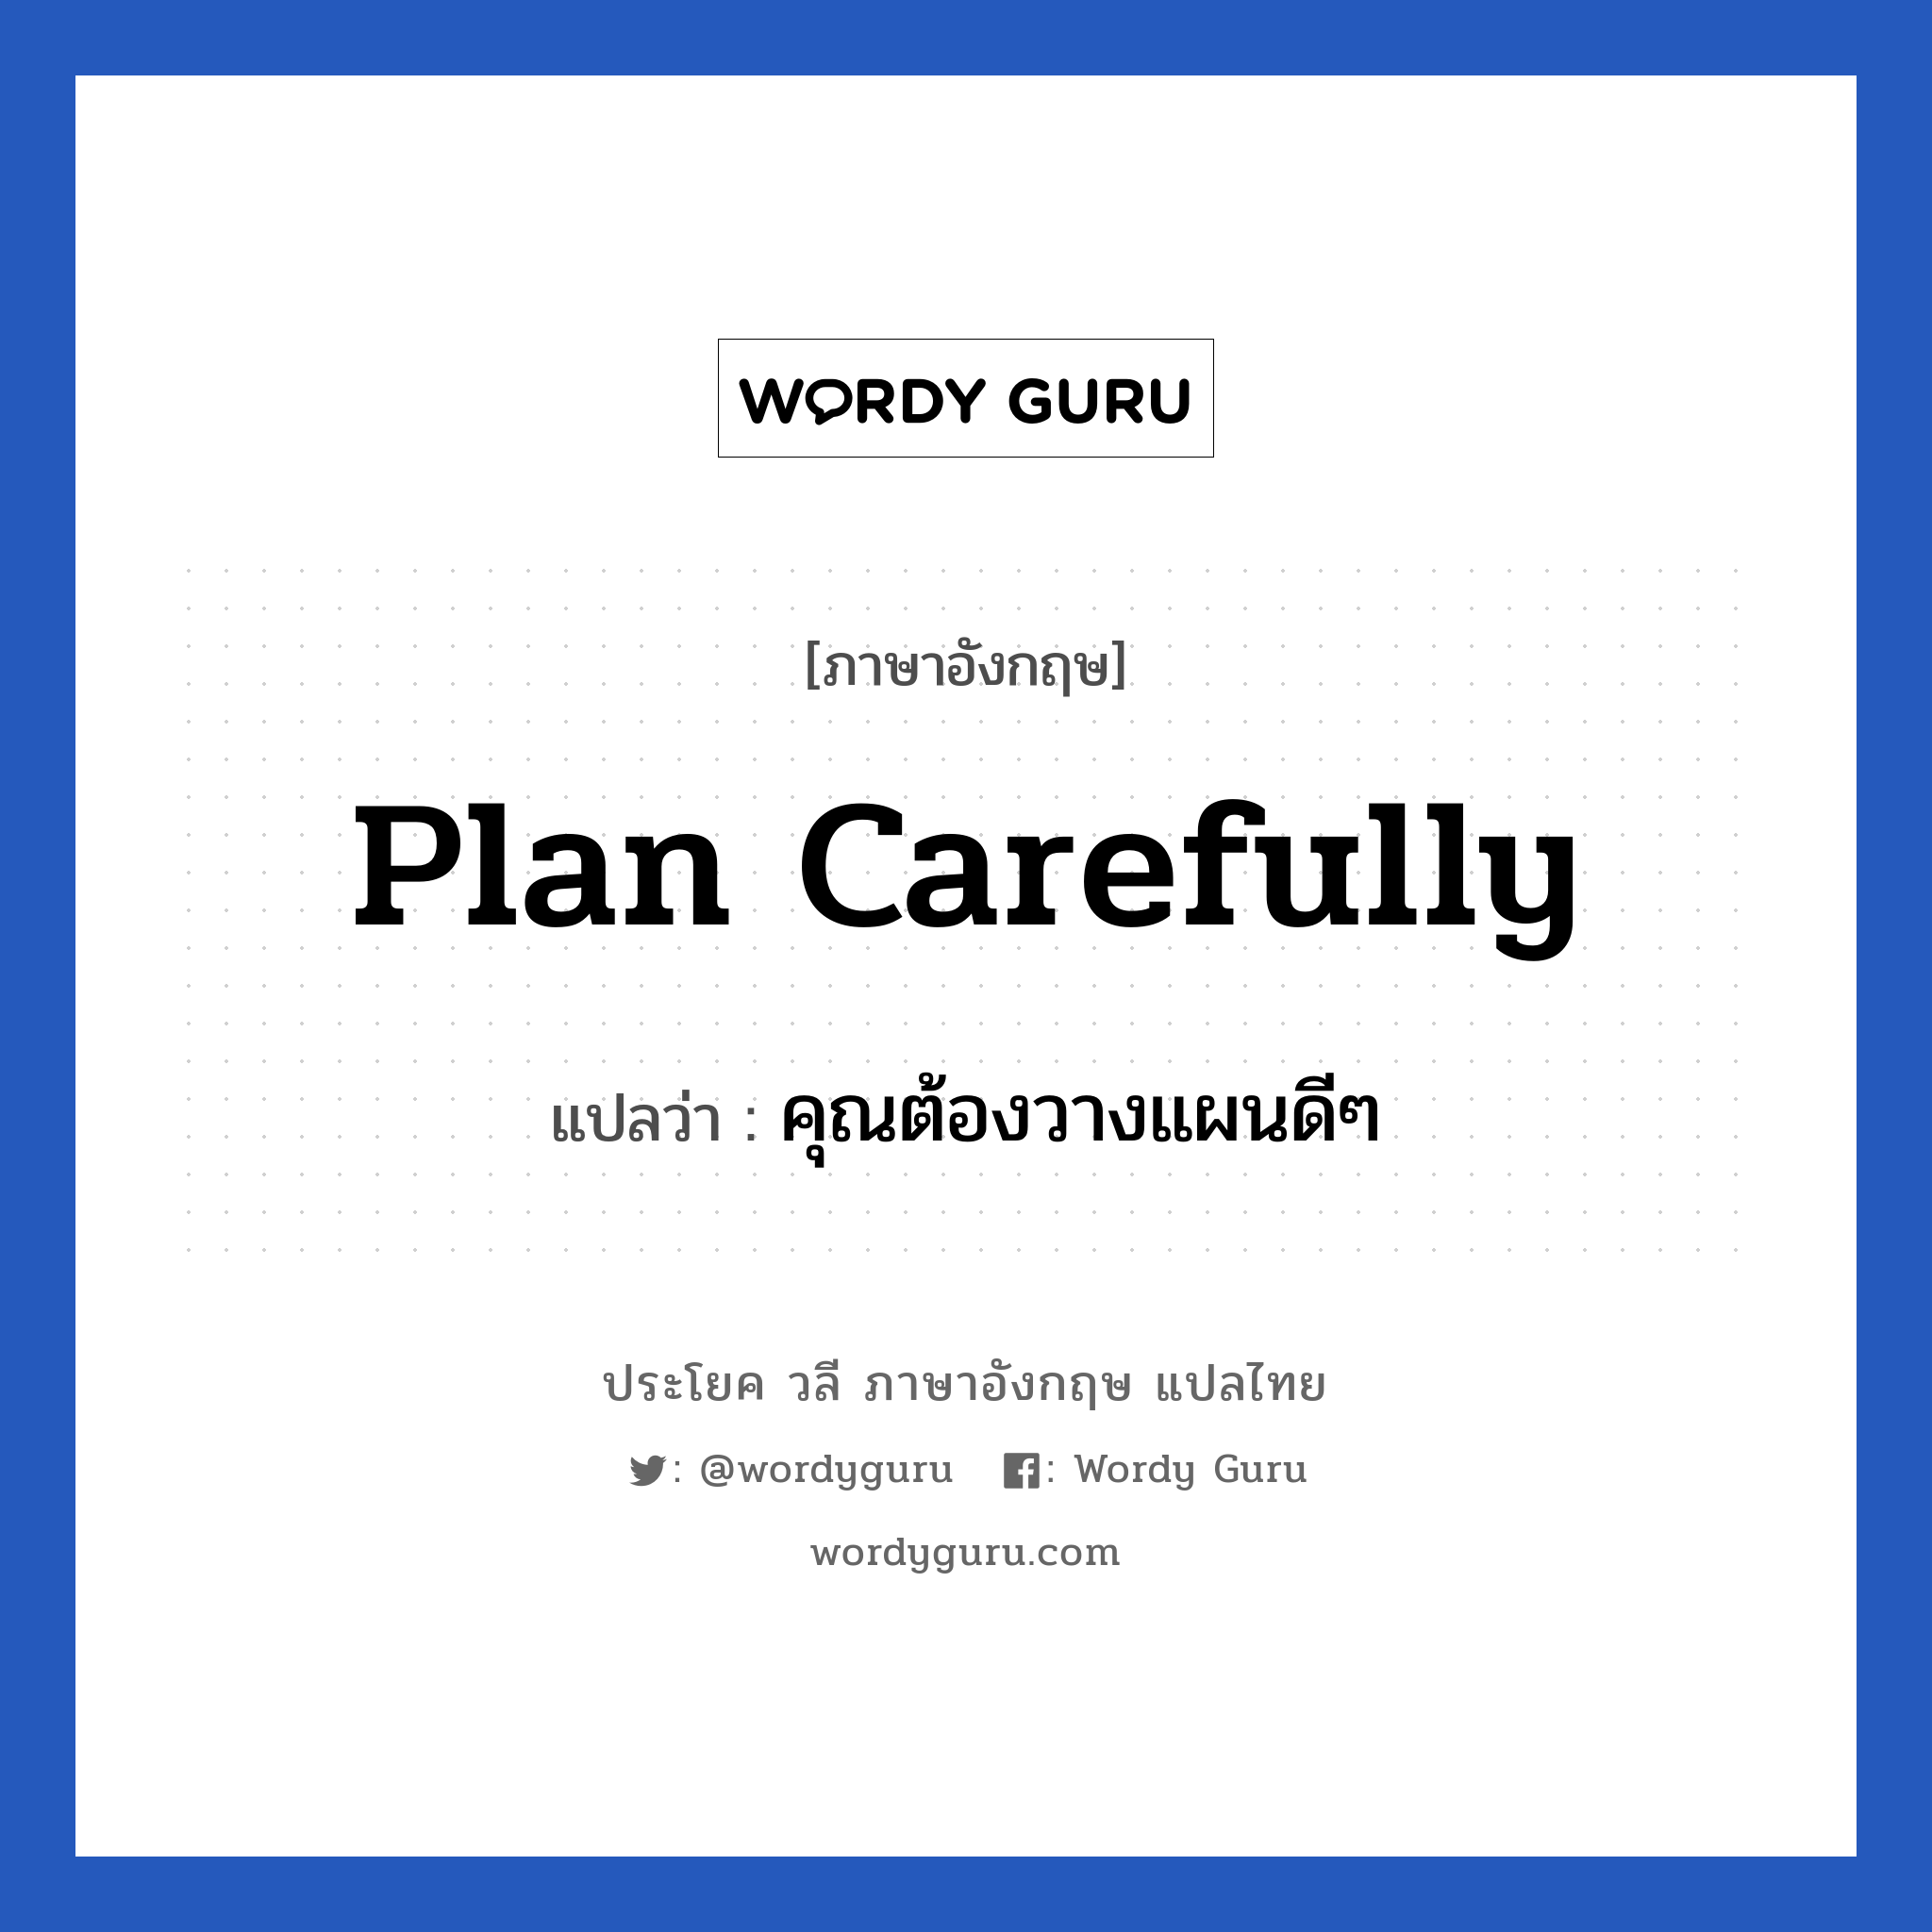 คุณต้องวางแผนดีๆ ภาษาอังกฤษ?, วลีภาษาอังกฤษ คุณต้องวางแผนดีๆ แปลว่า Plan carefully